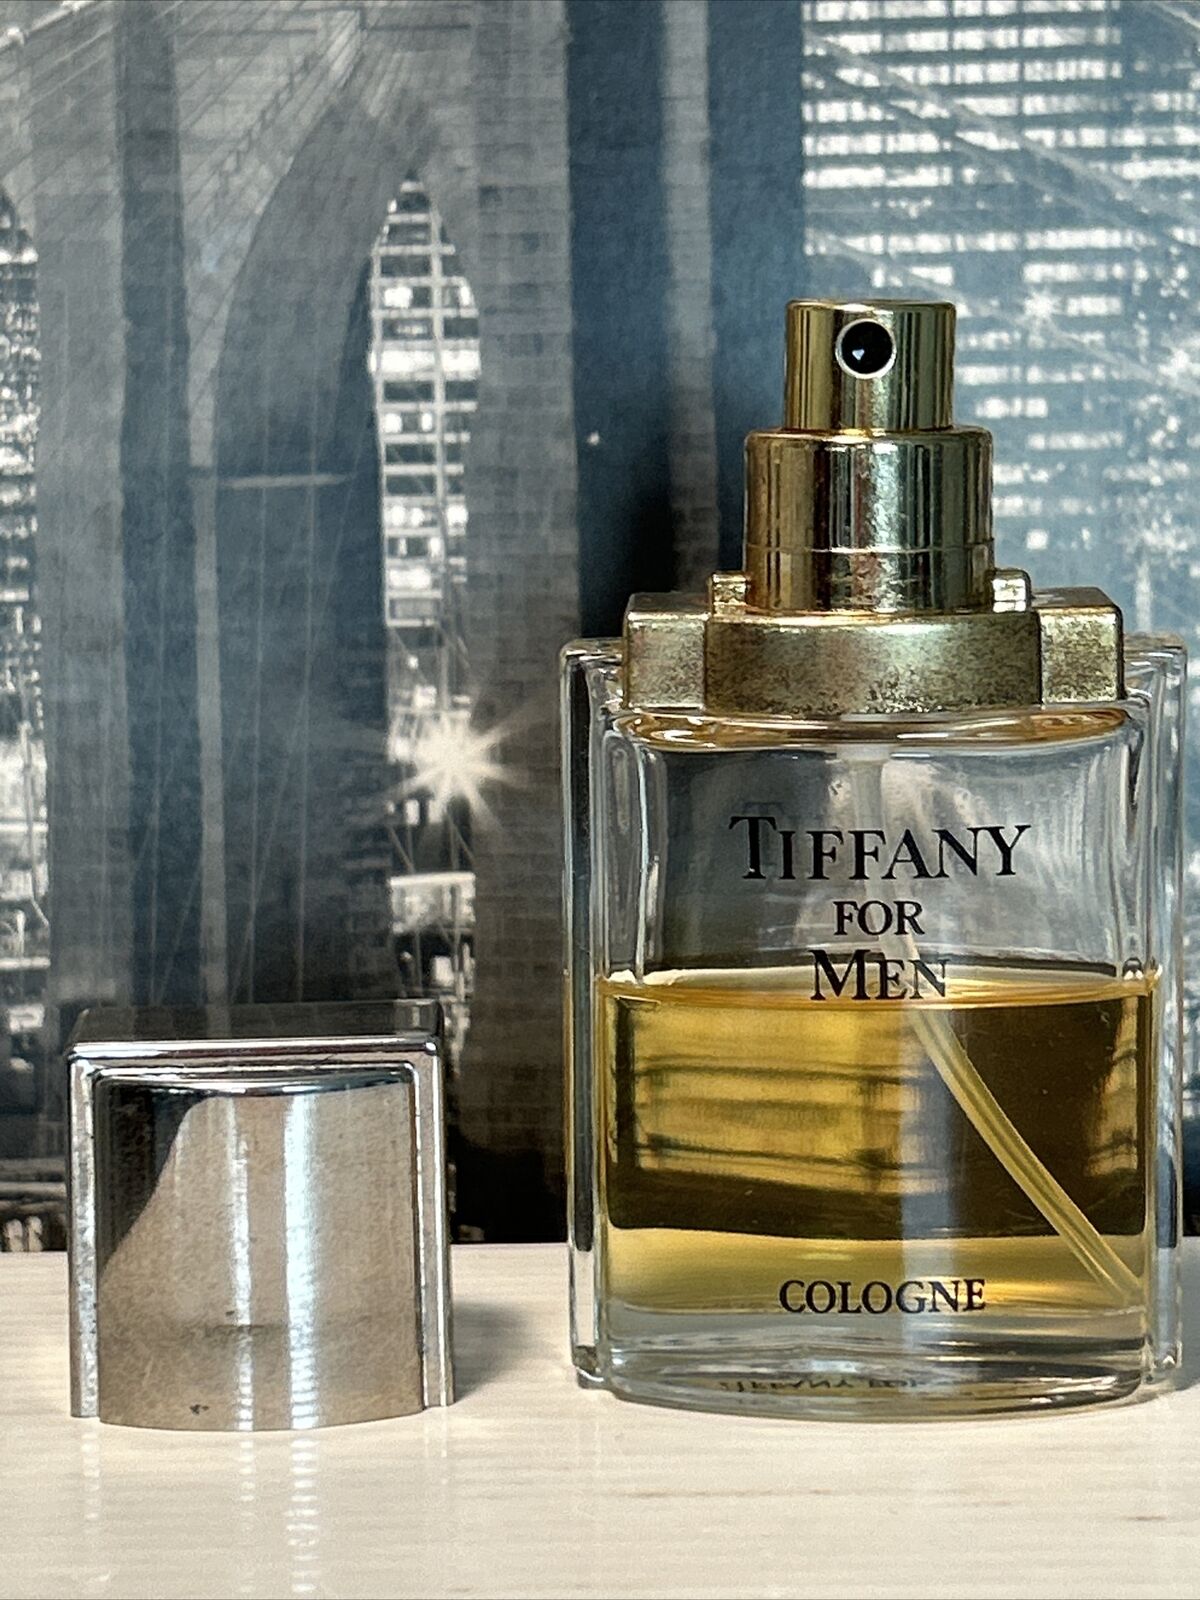 tiffany for men cologne vintage Tiffany & Co New York NY USA